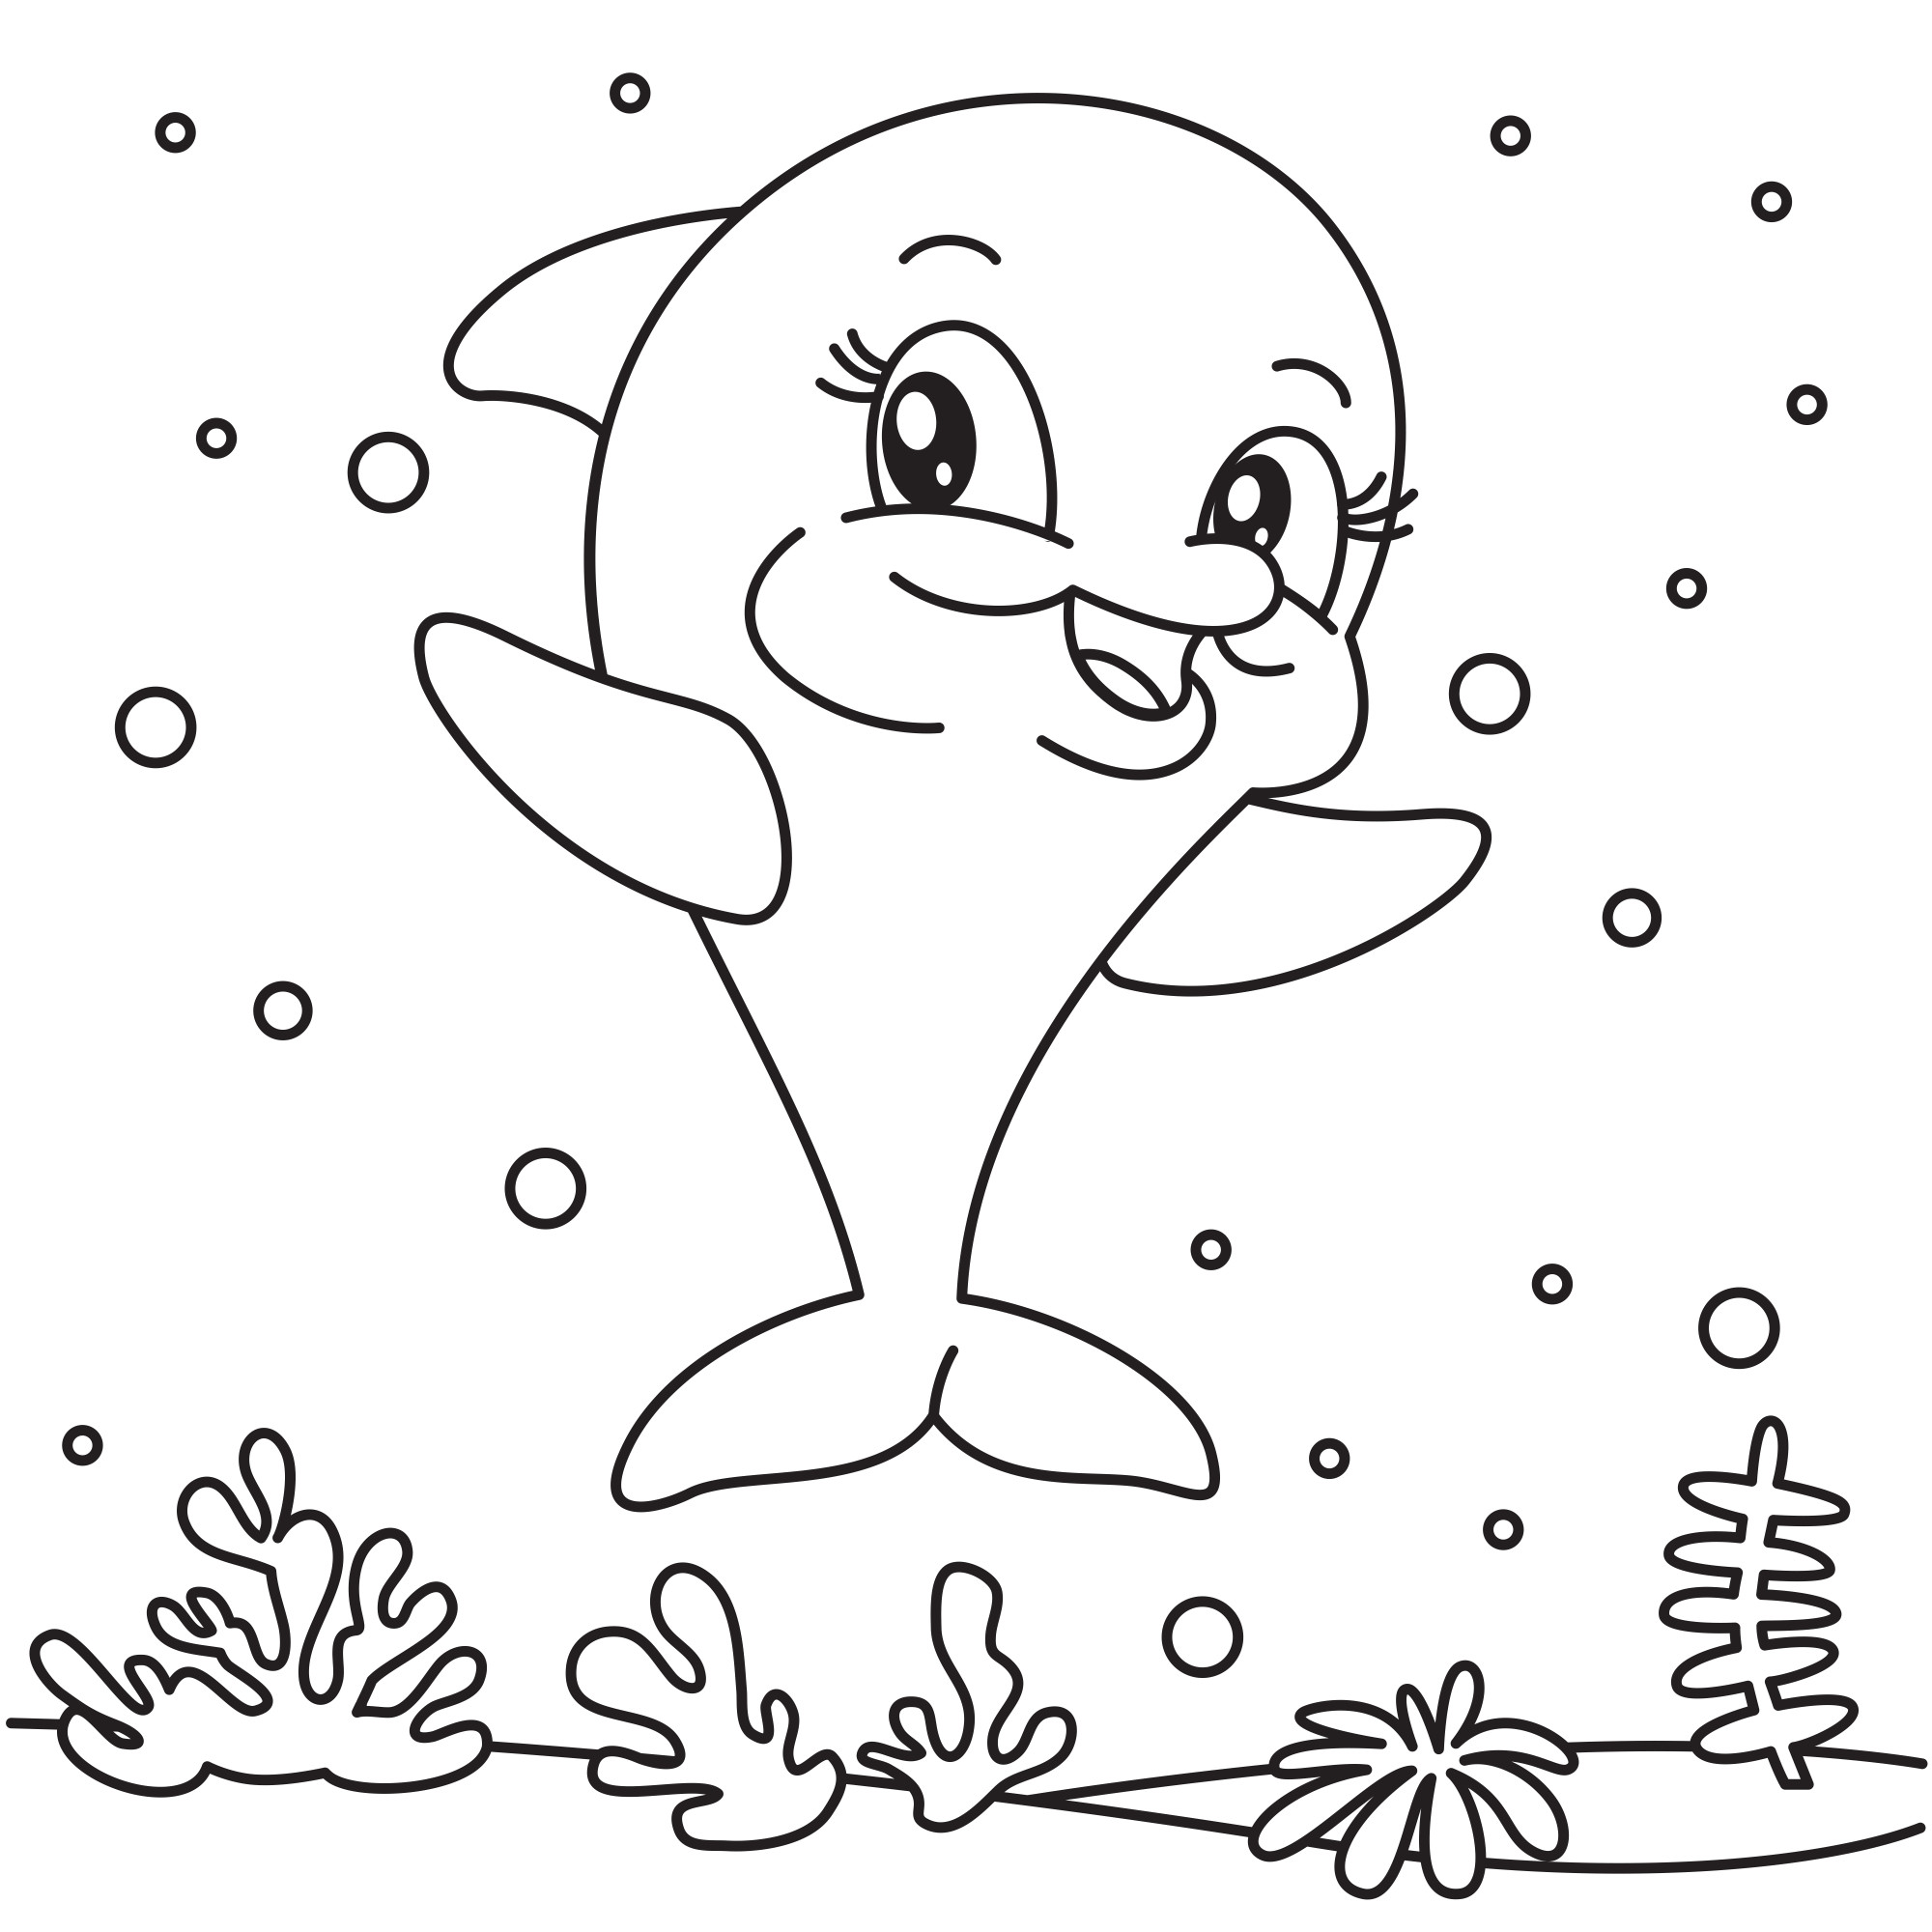 Раскраска для детей: маленький мультяшный дельфин улыбается